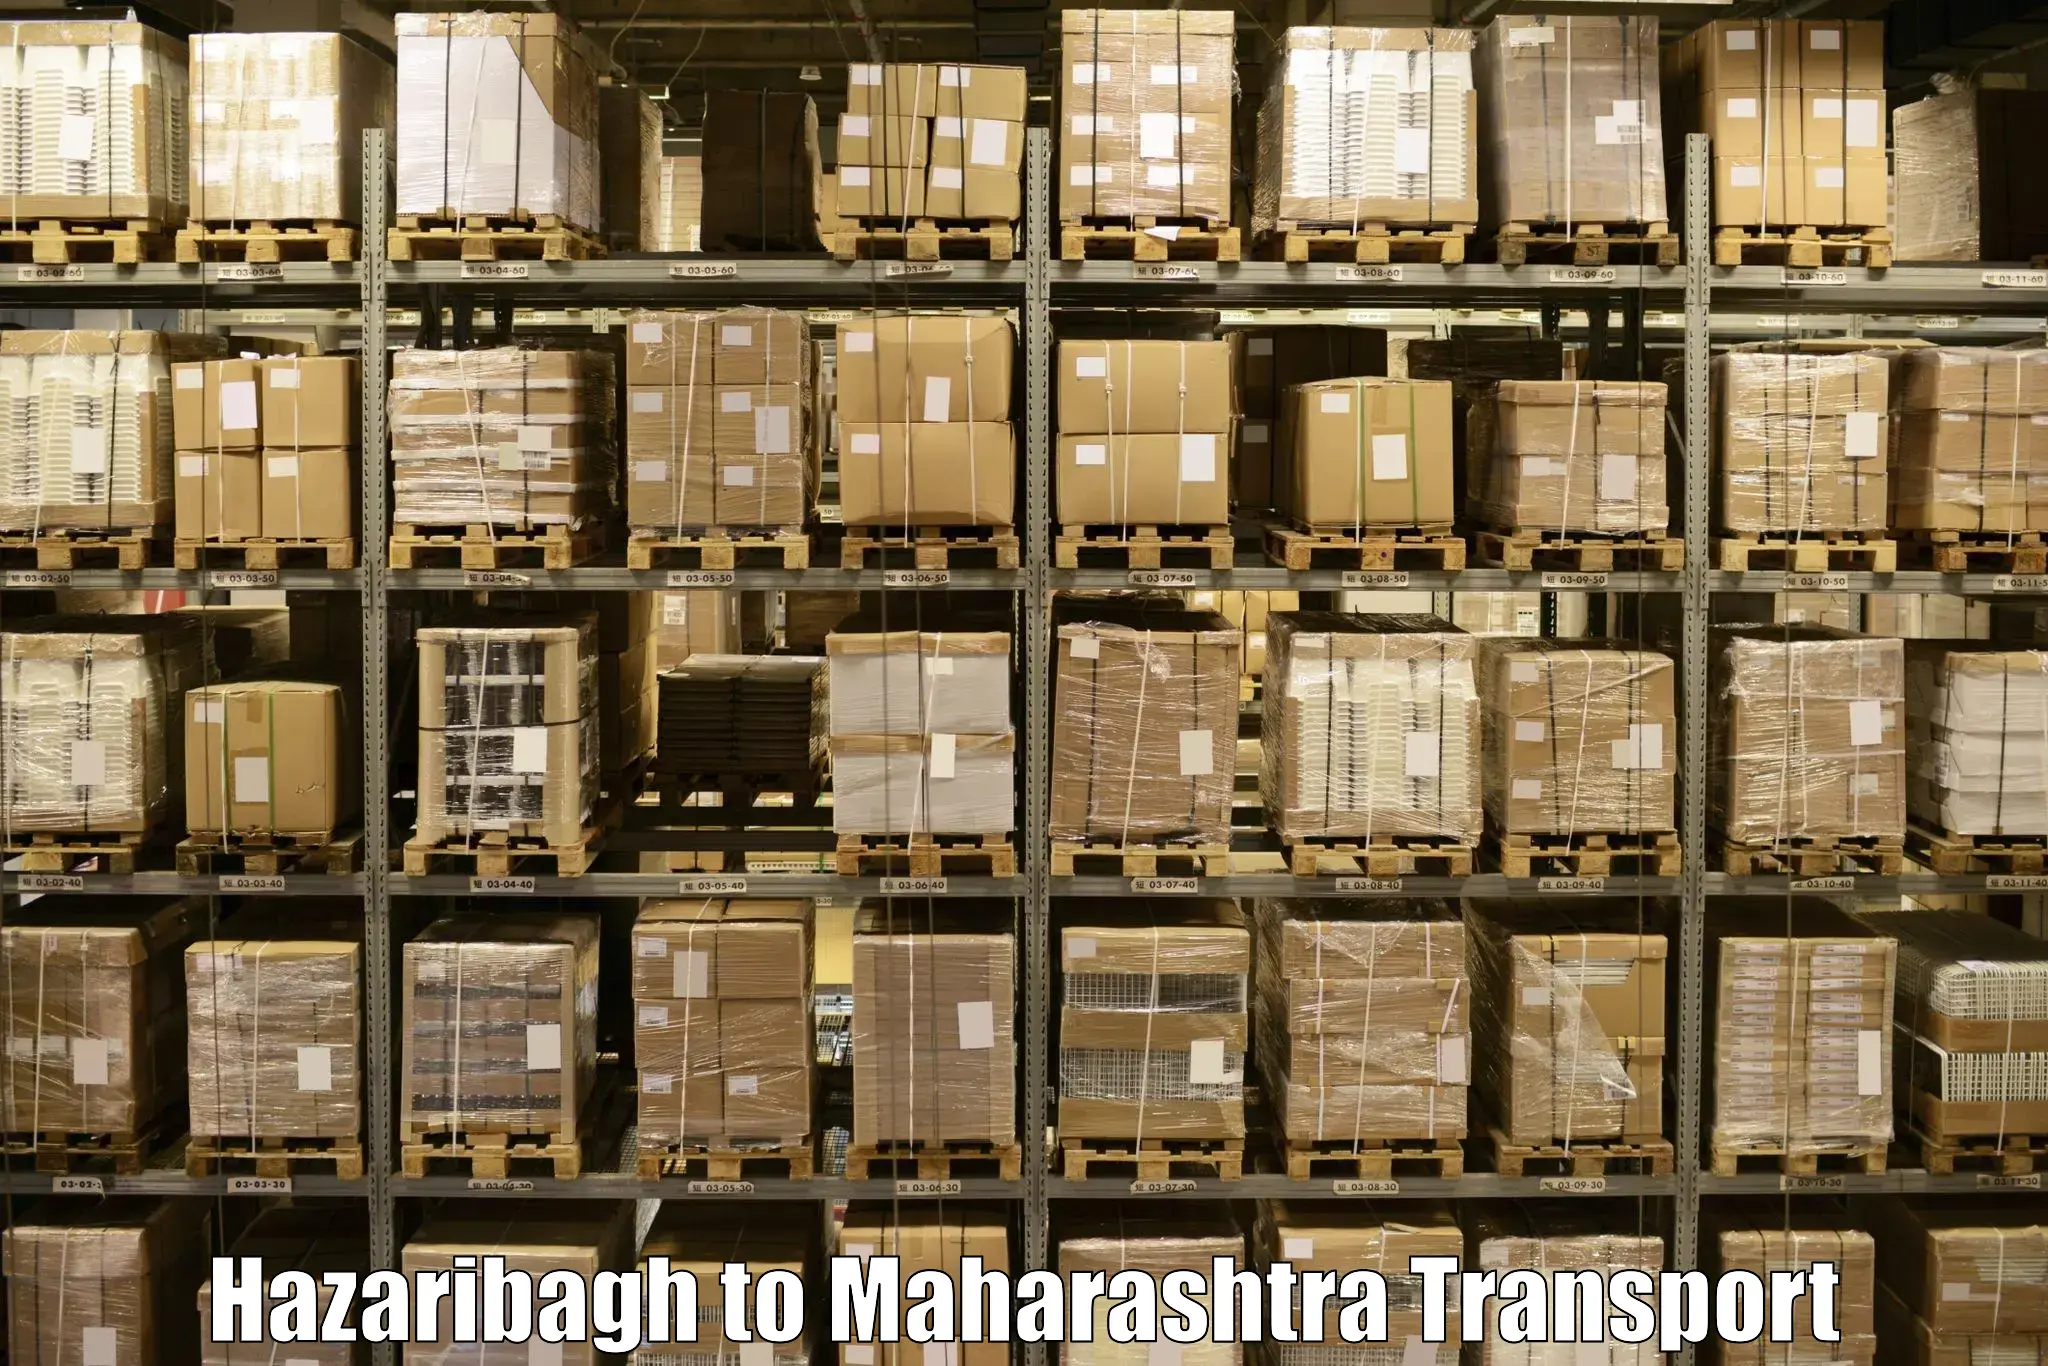 Daily parcel service transport Hazaribagh to Amalner